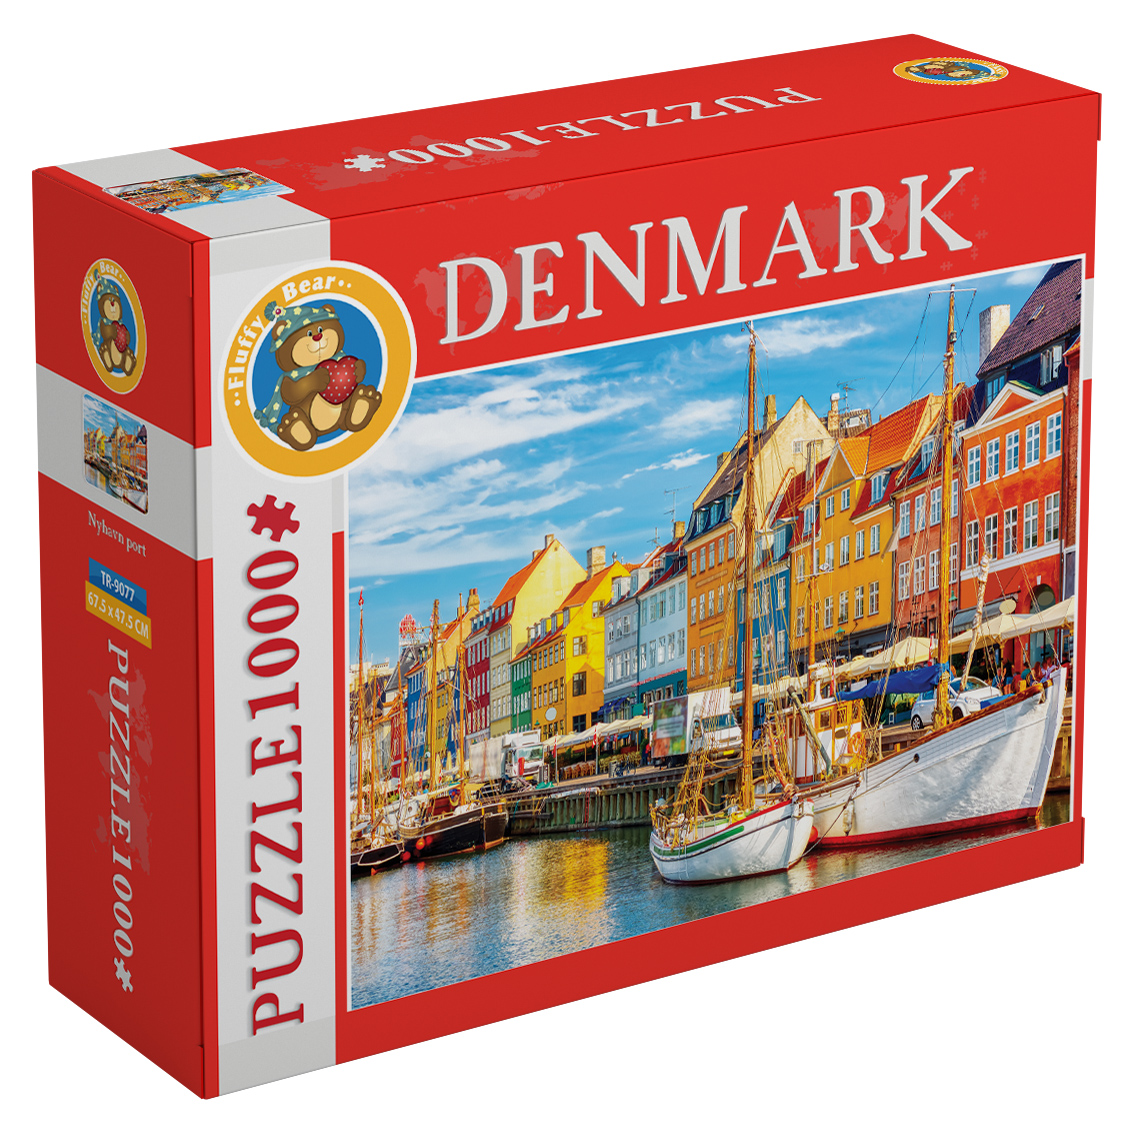 Nyhavn Port – Denmark